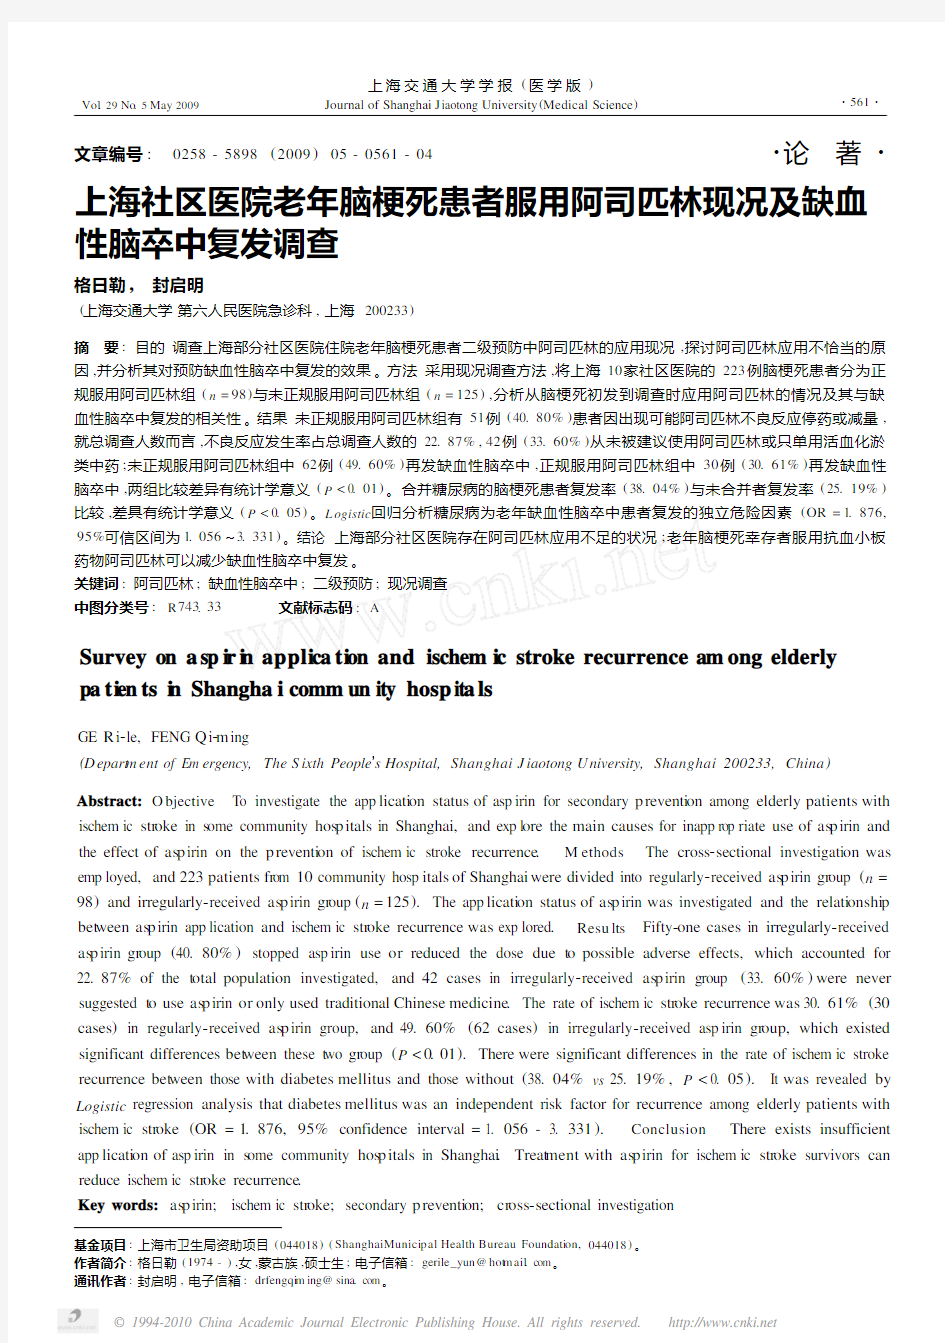 上海社区医院老年脑梗死患者服用阿司匹林现况及缺血性脑卒中复发调查